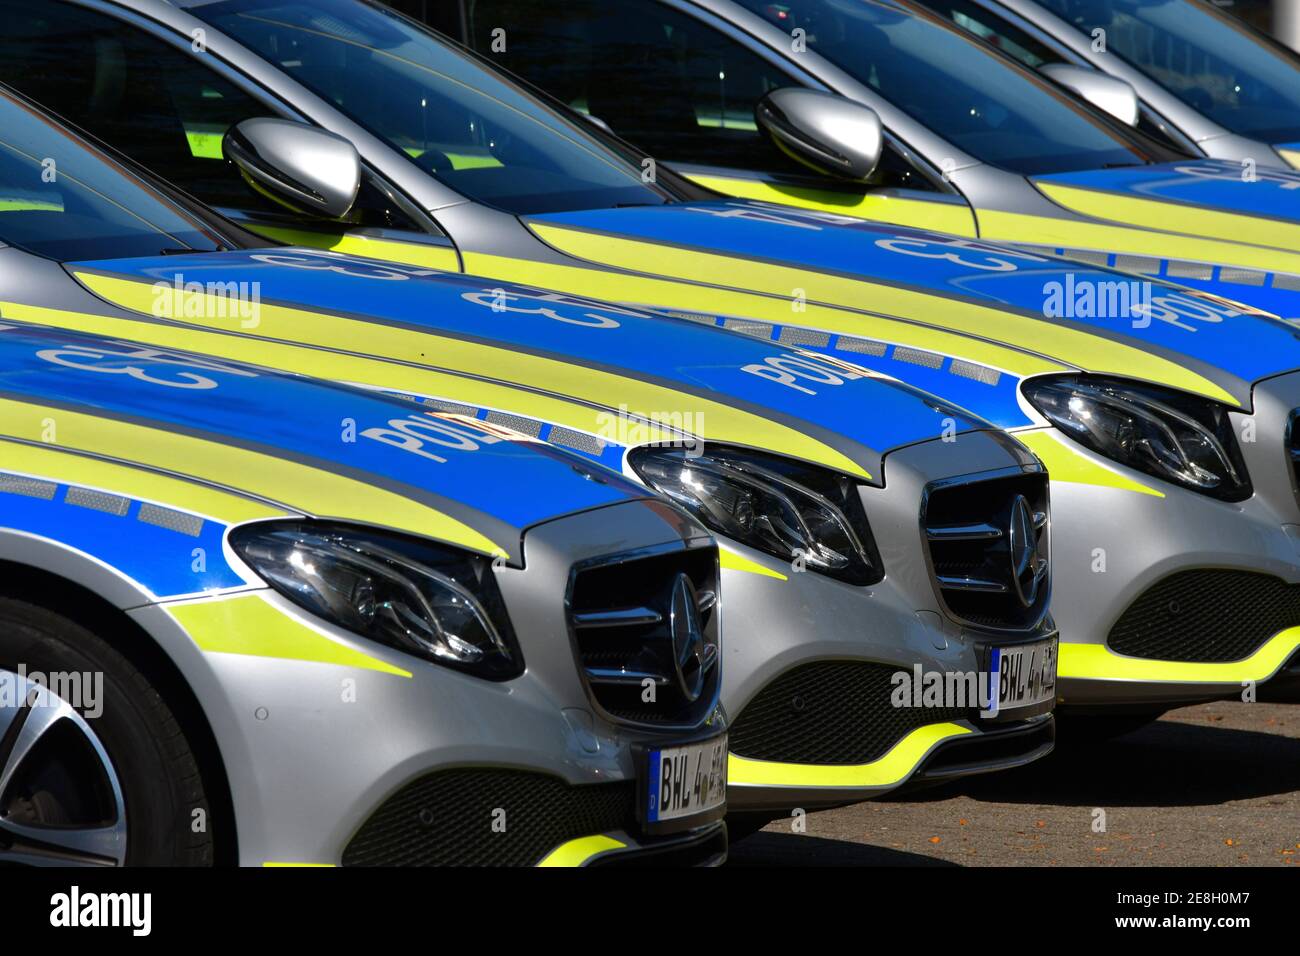 L'avant de plusieurs voitures de police marquées en Allemagne debout côte à côte. Banque D'Images